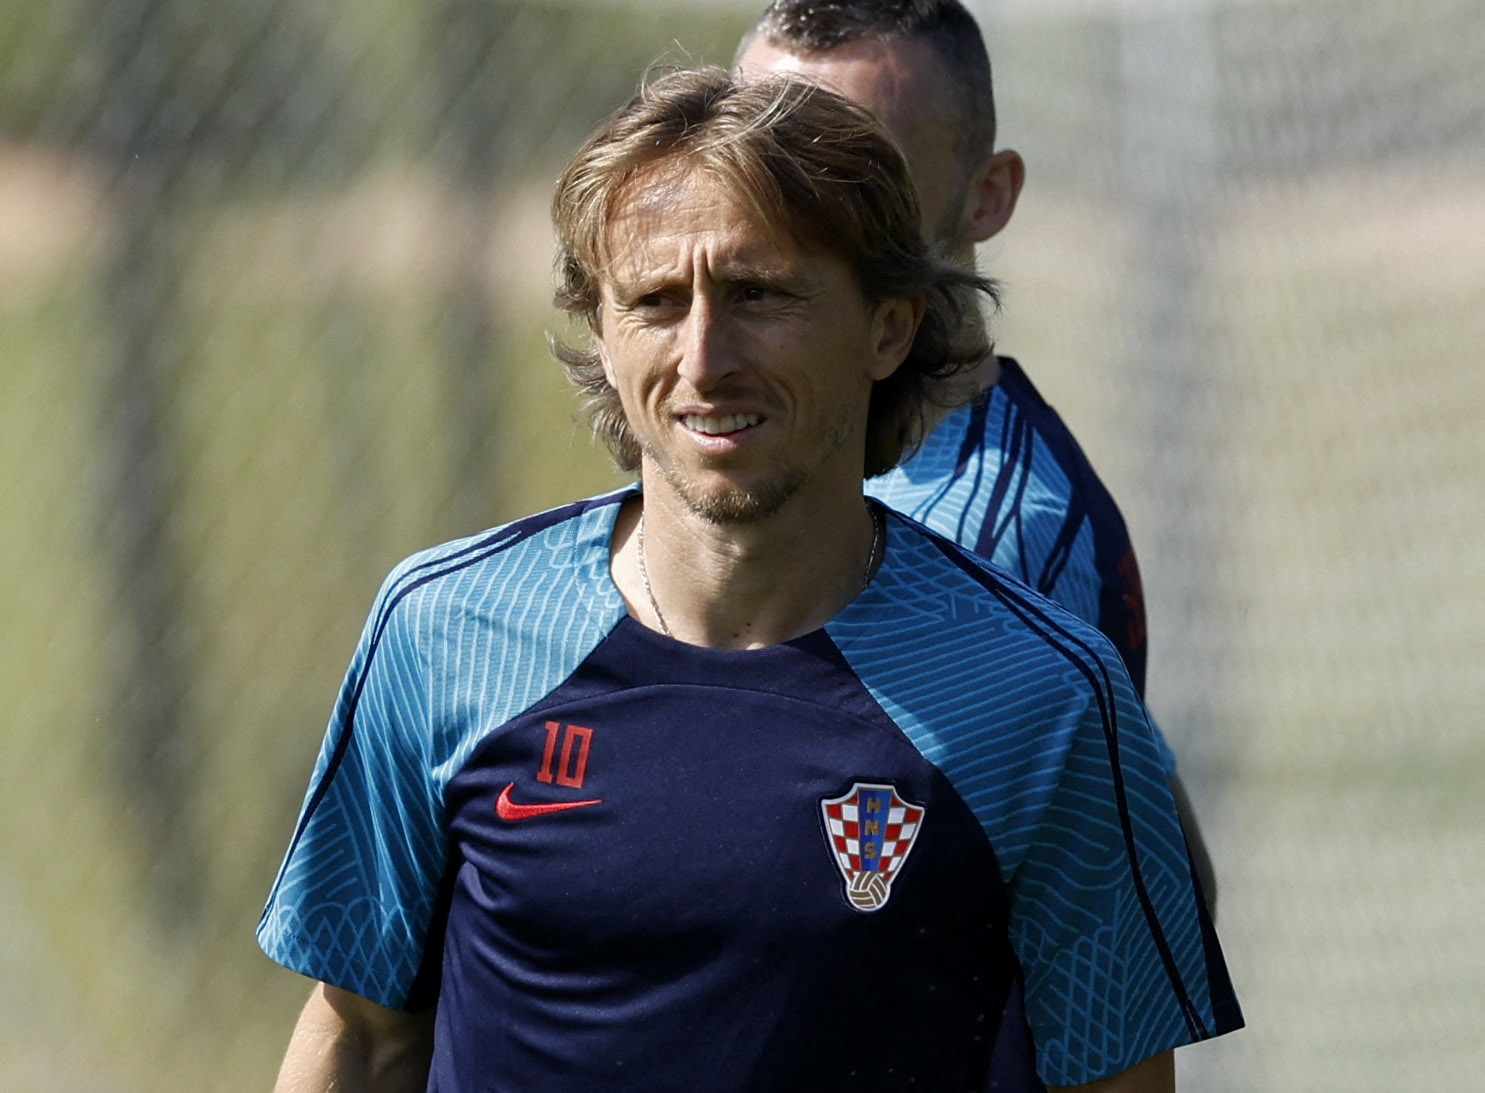 Relevo on Twitter: "🇭🇷 Luka Modric, rueda de prensa: "Firmaría retirarme si ganamos el Mundial". 😅 Si implica el fin de su carrera, no queremos que Croacia gane la Copa